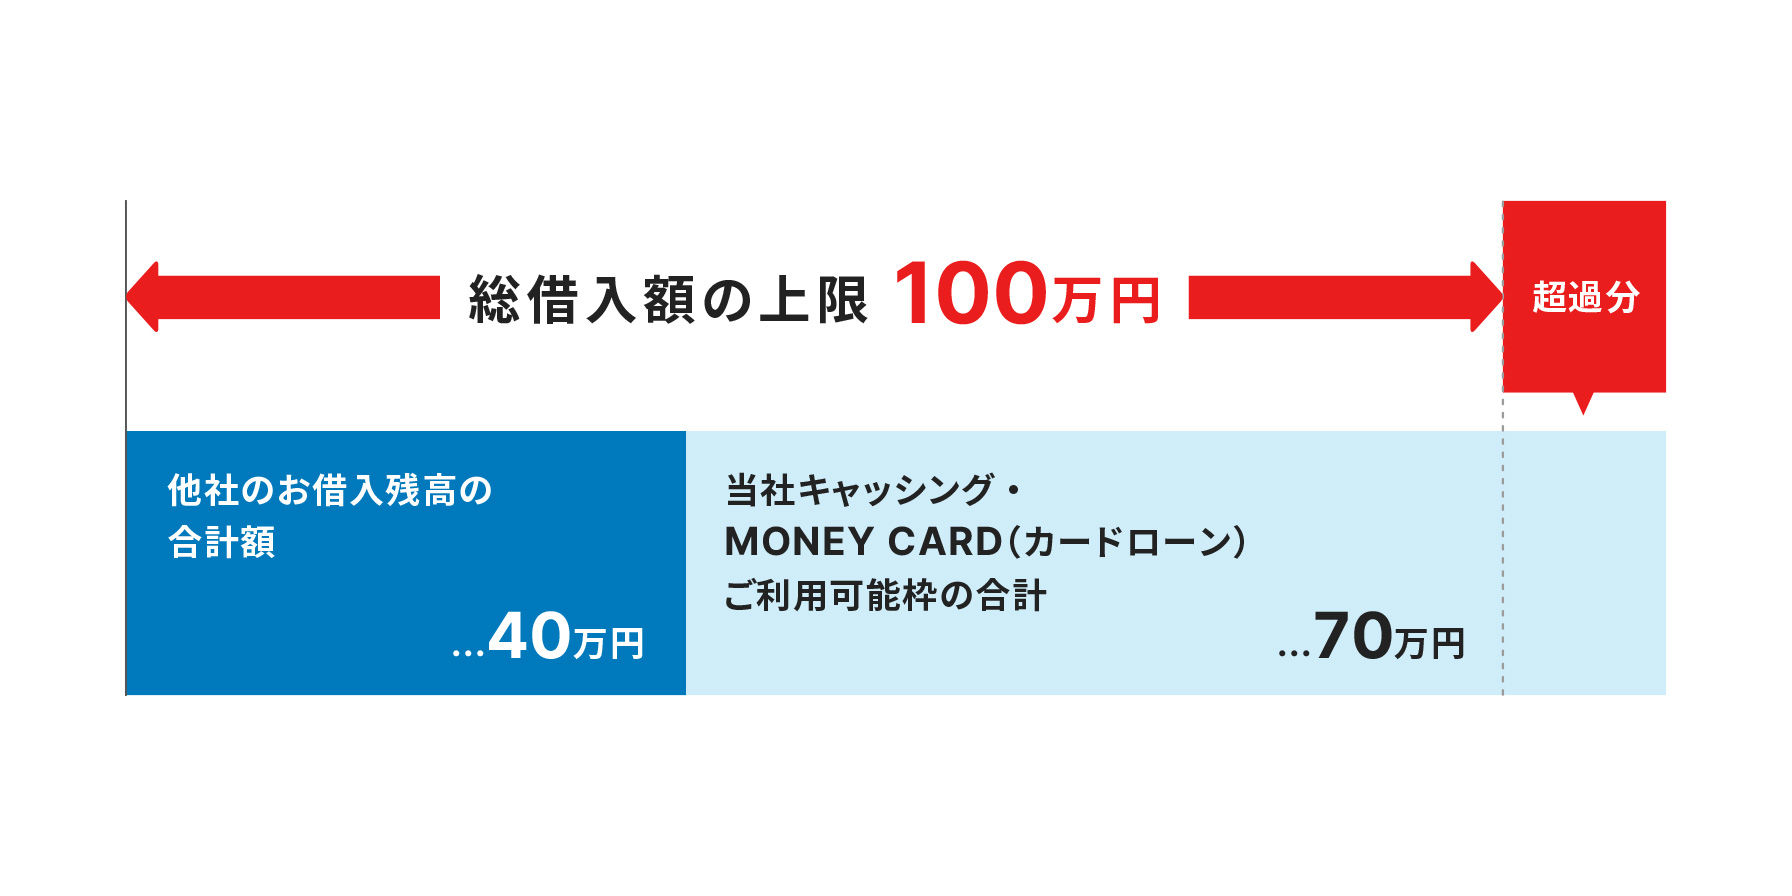 他社のお借入残高の合計額が40万円、当社キャッシング・MONEY CARD（カードローン）ご利用可能枠の合計が70万円の場合、総借入額の上限100万円の超過分が発生。